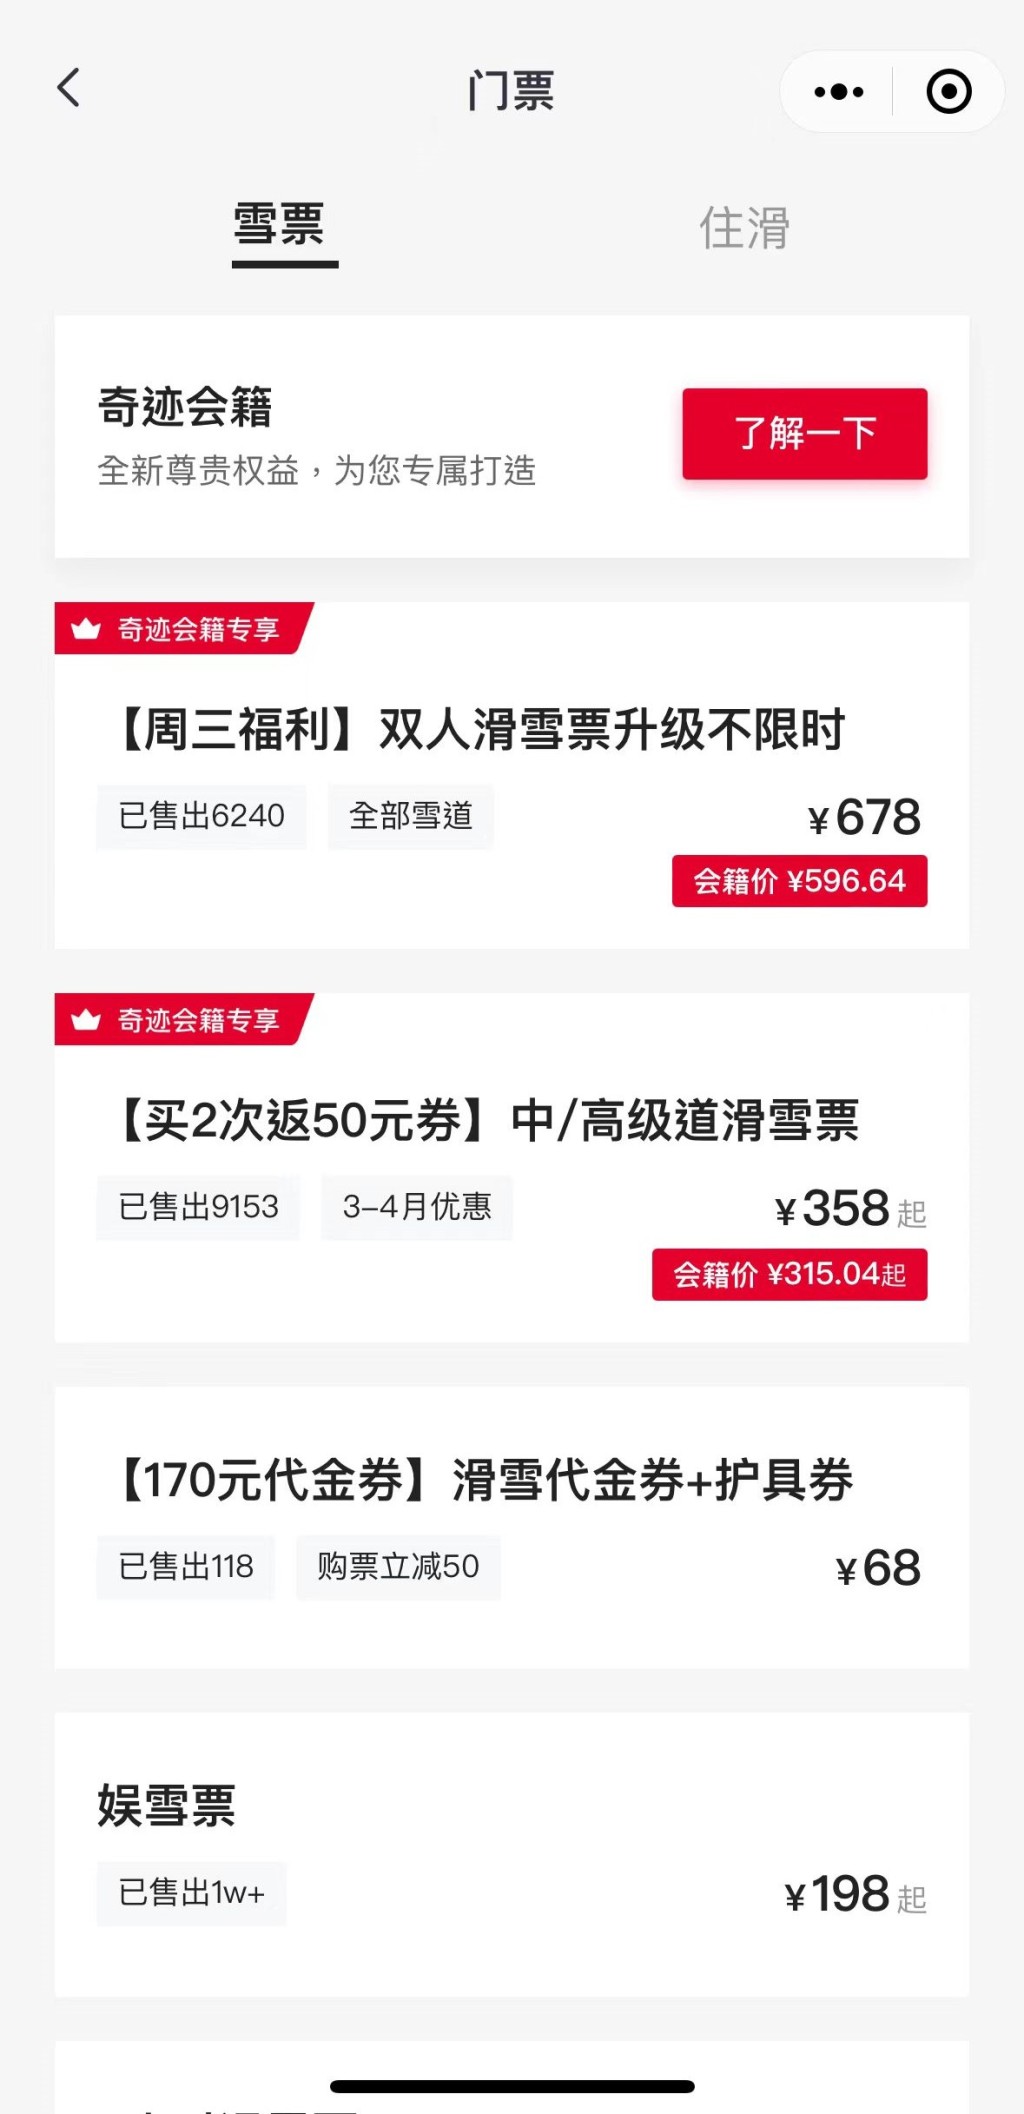 4. 可使用WeChat Pay HK 以港幣結算及付款